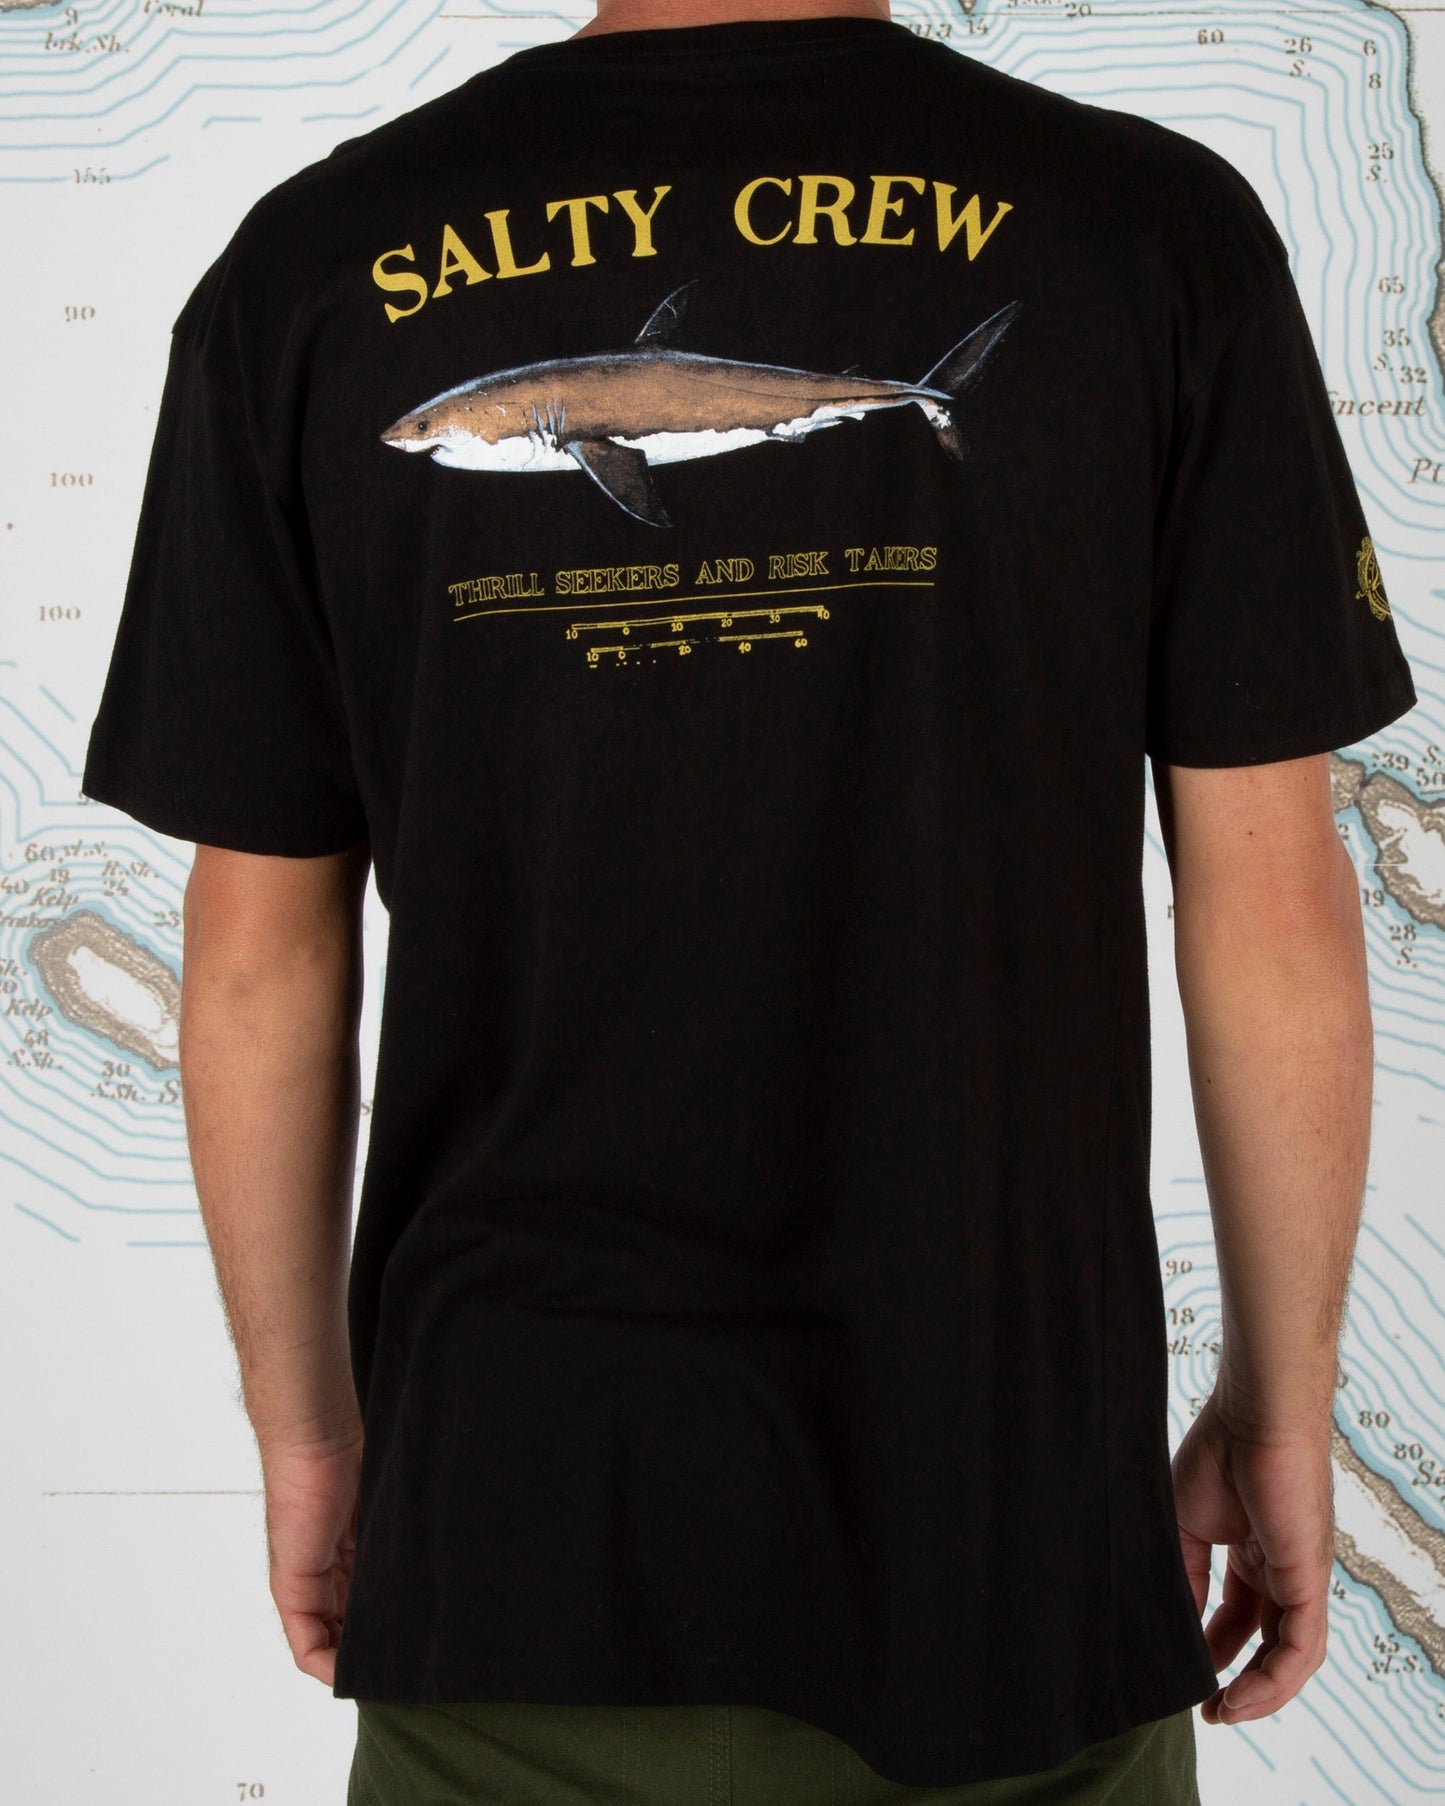 Bruce S/S Tee - Salty Crew Australia